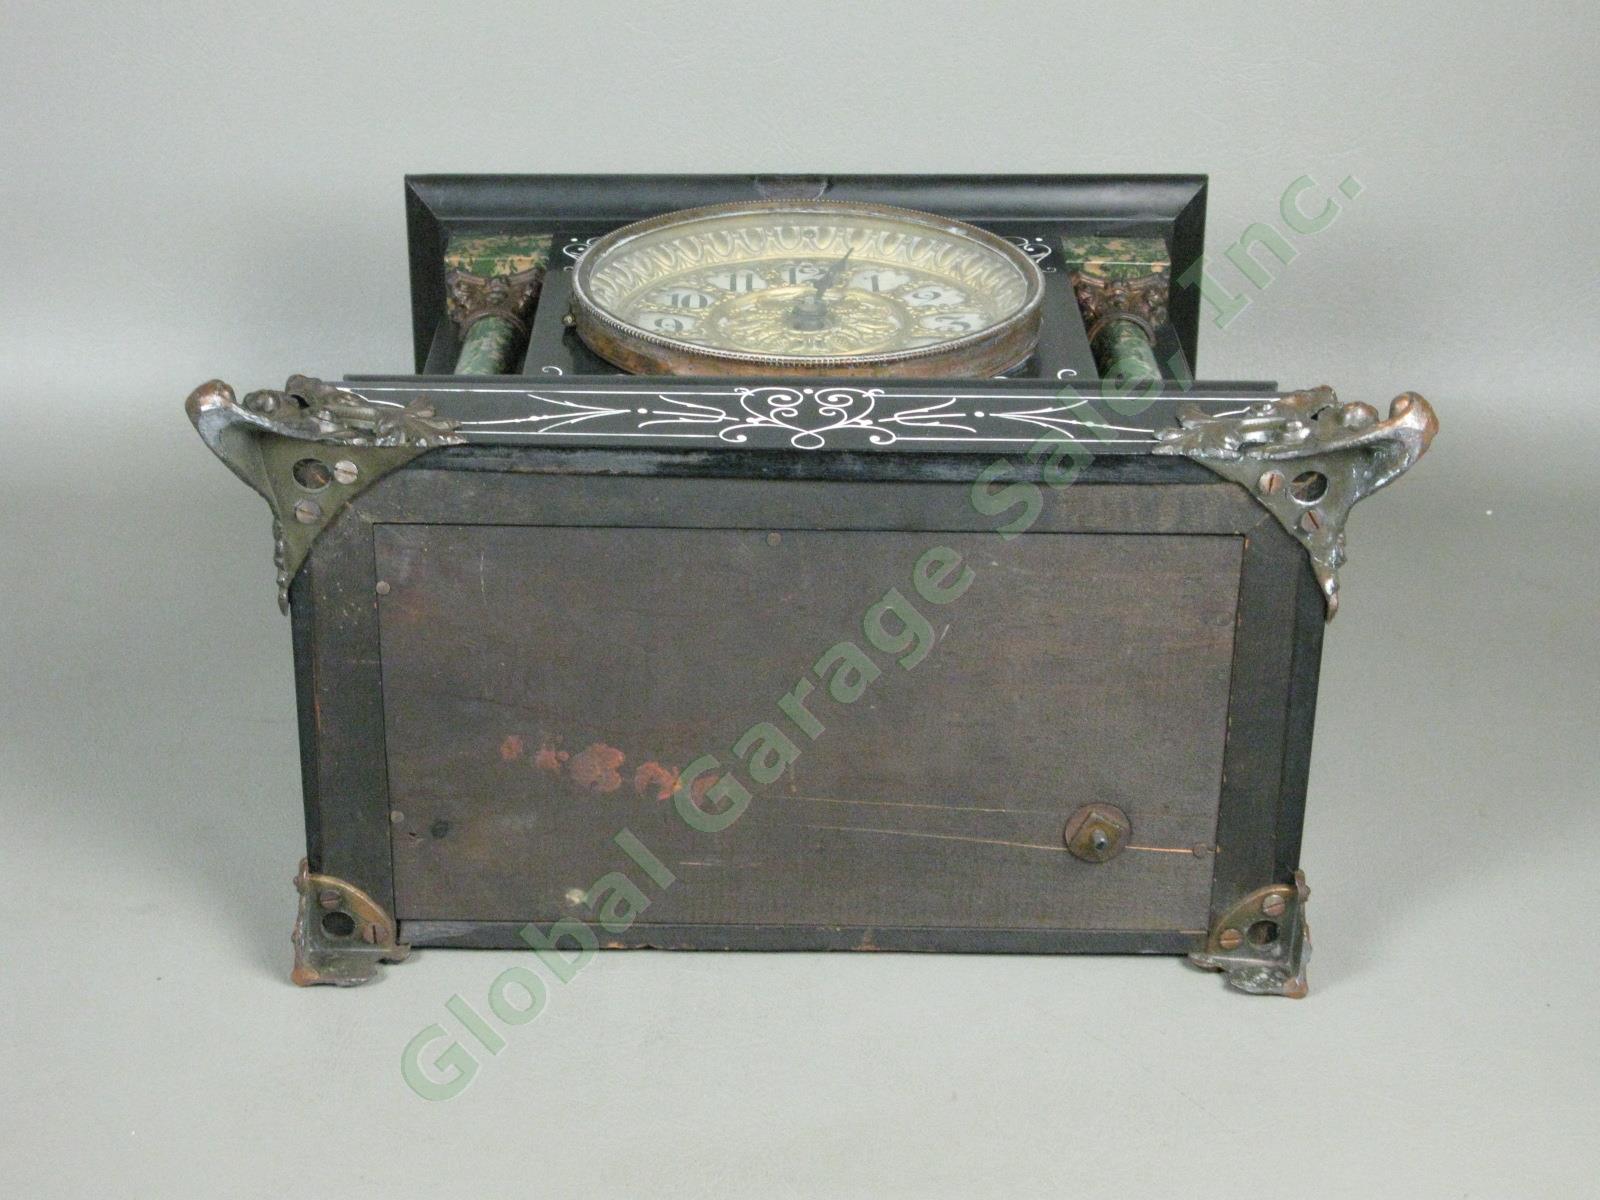 Rare Antique Seth Thomas Green Adamantine Mantle Pendulum Clock 3 5/8 Movement 10